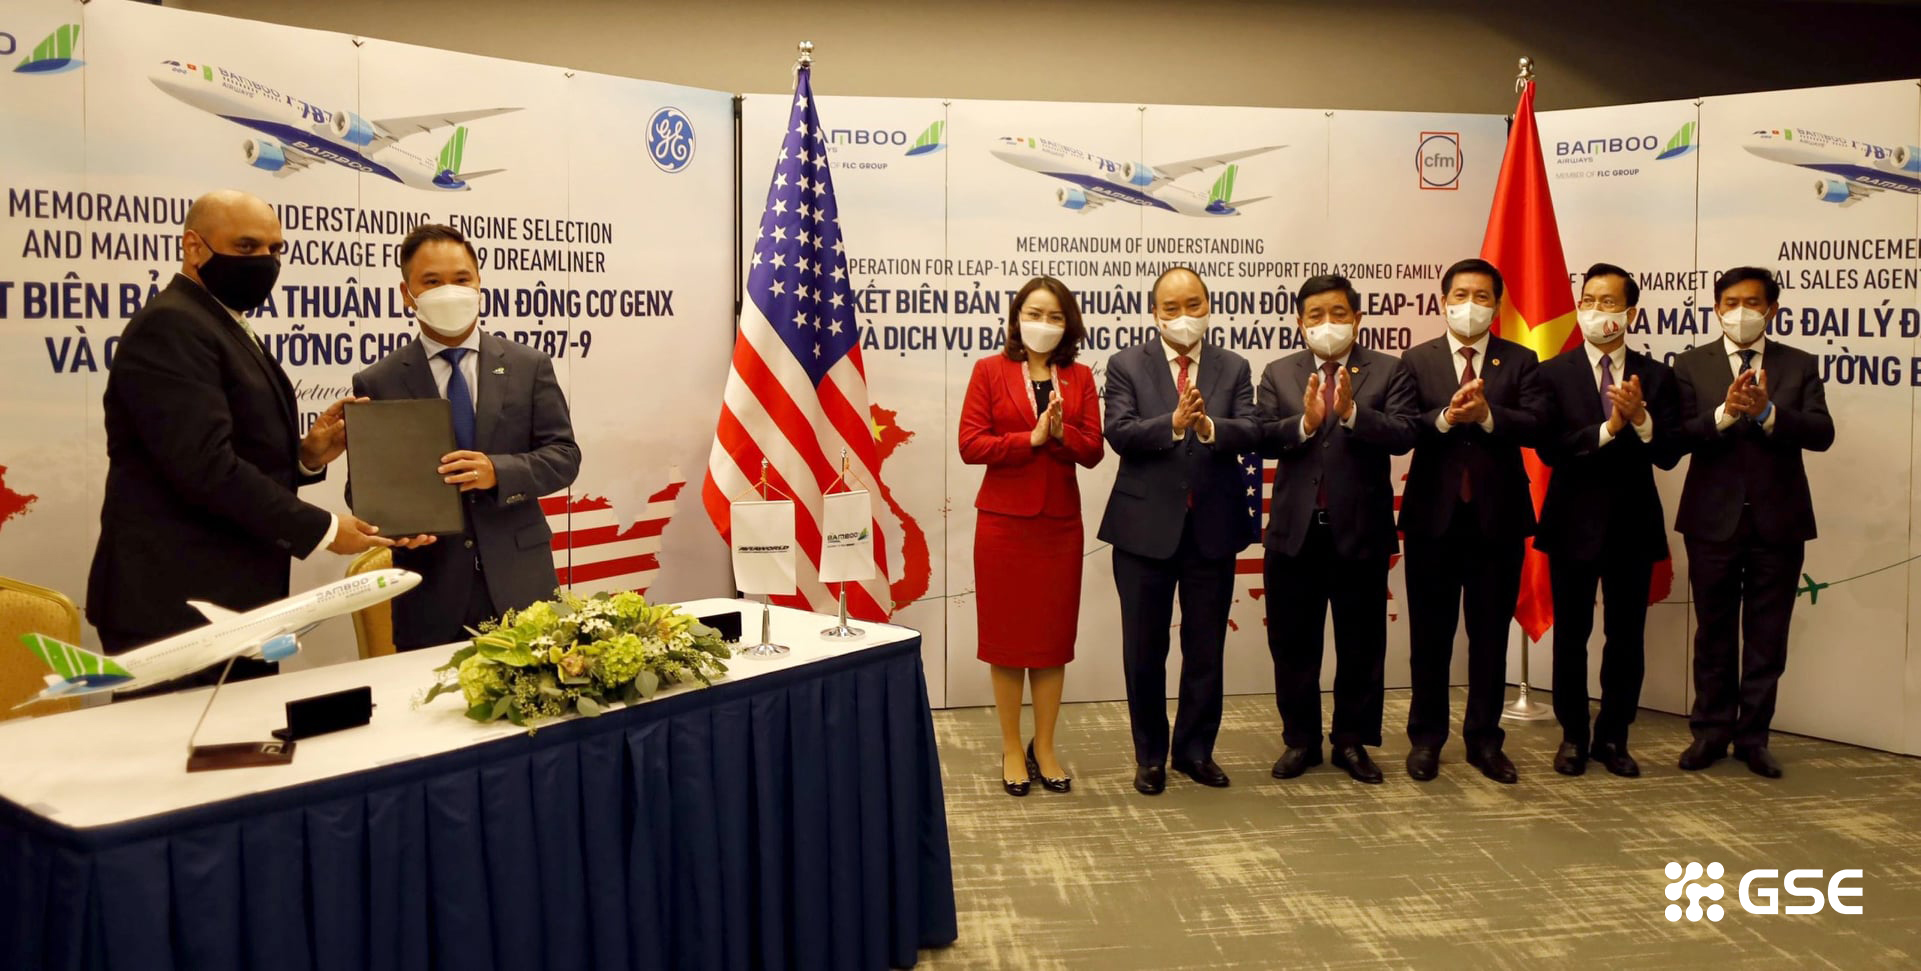 Bamboo airway với đường bay thẳng từ Việt Nam đến Hoa Kỳ lễ ký kết